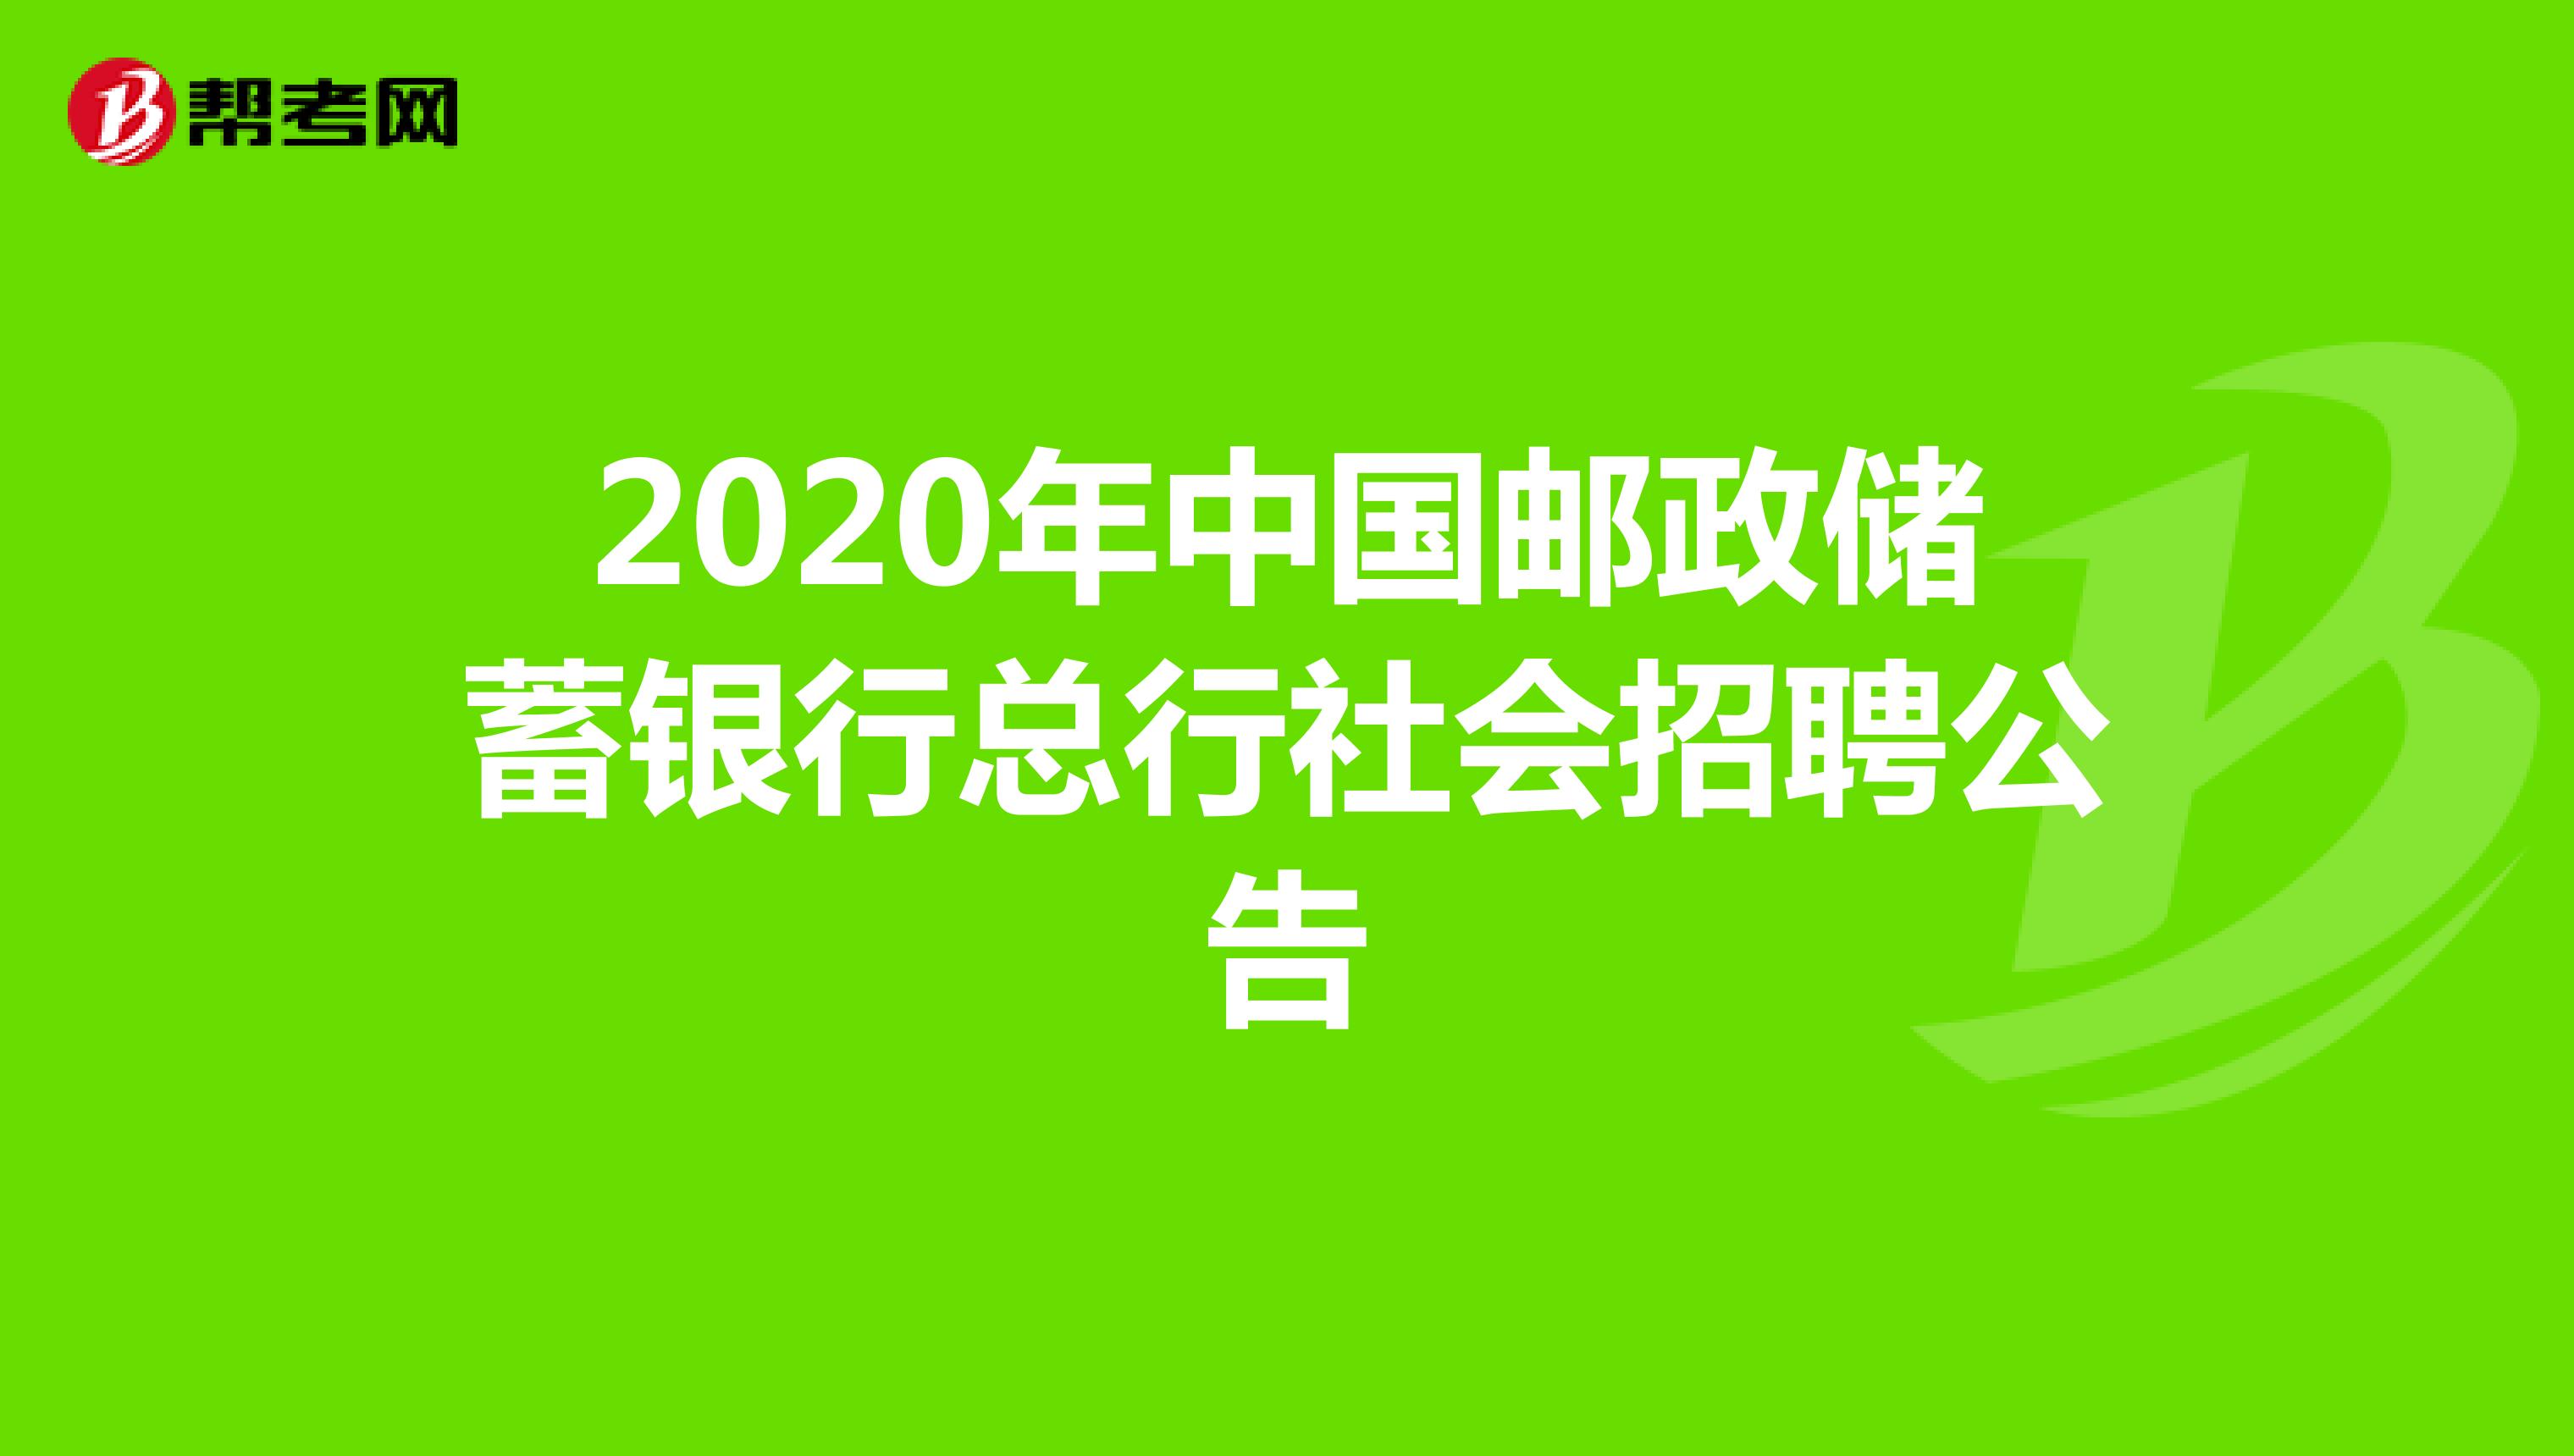 2020年中国邮政储蓄银行总行社会招聘公告